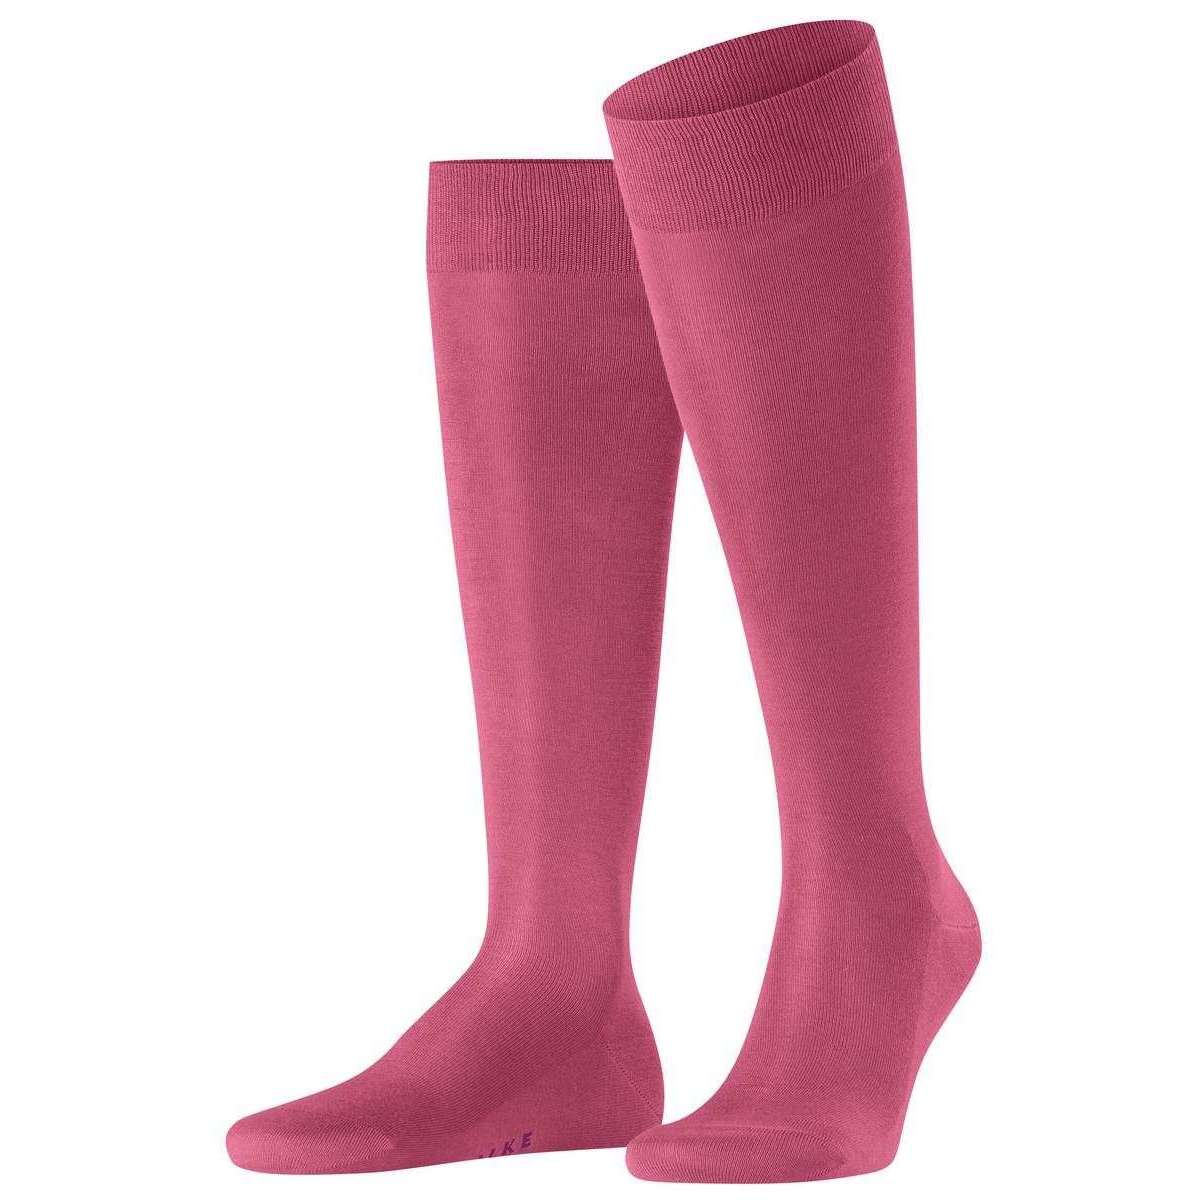 Falke Tiago Knee High Socks - English Rose Pink